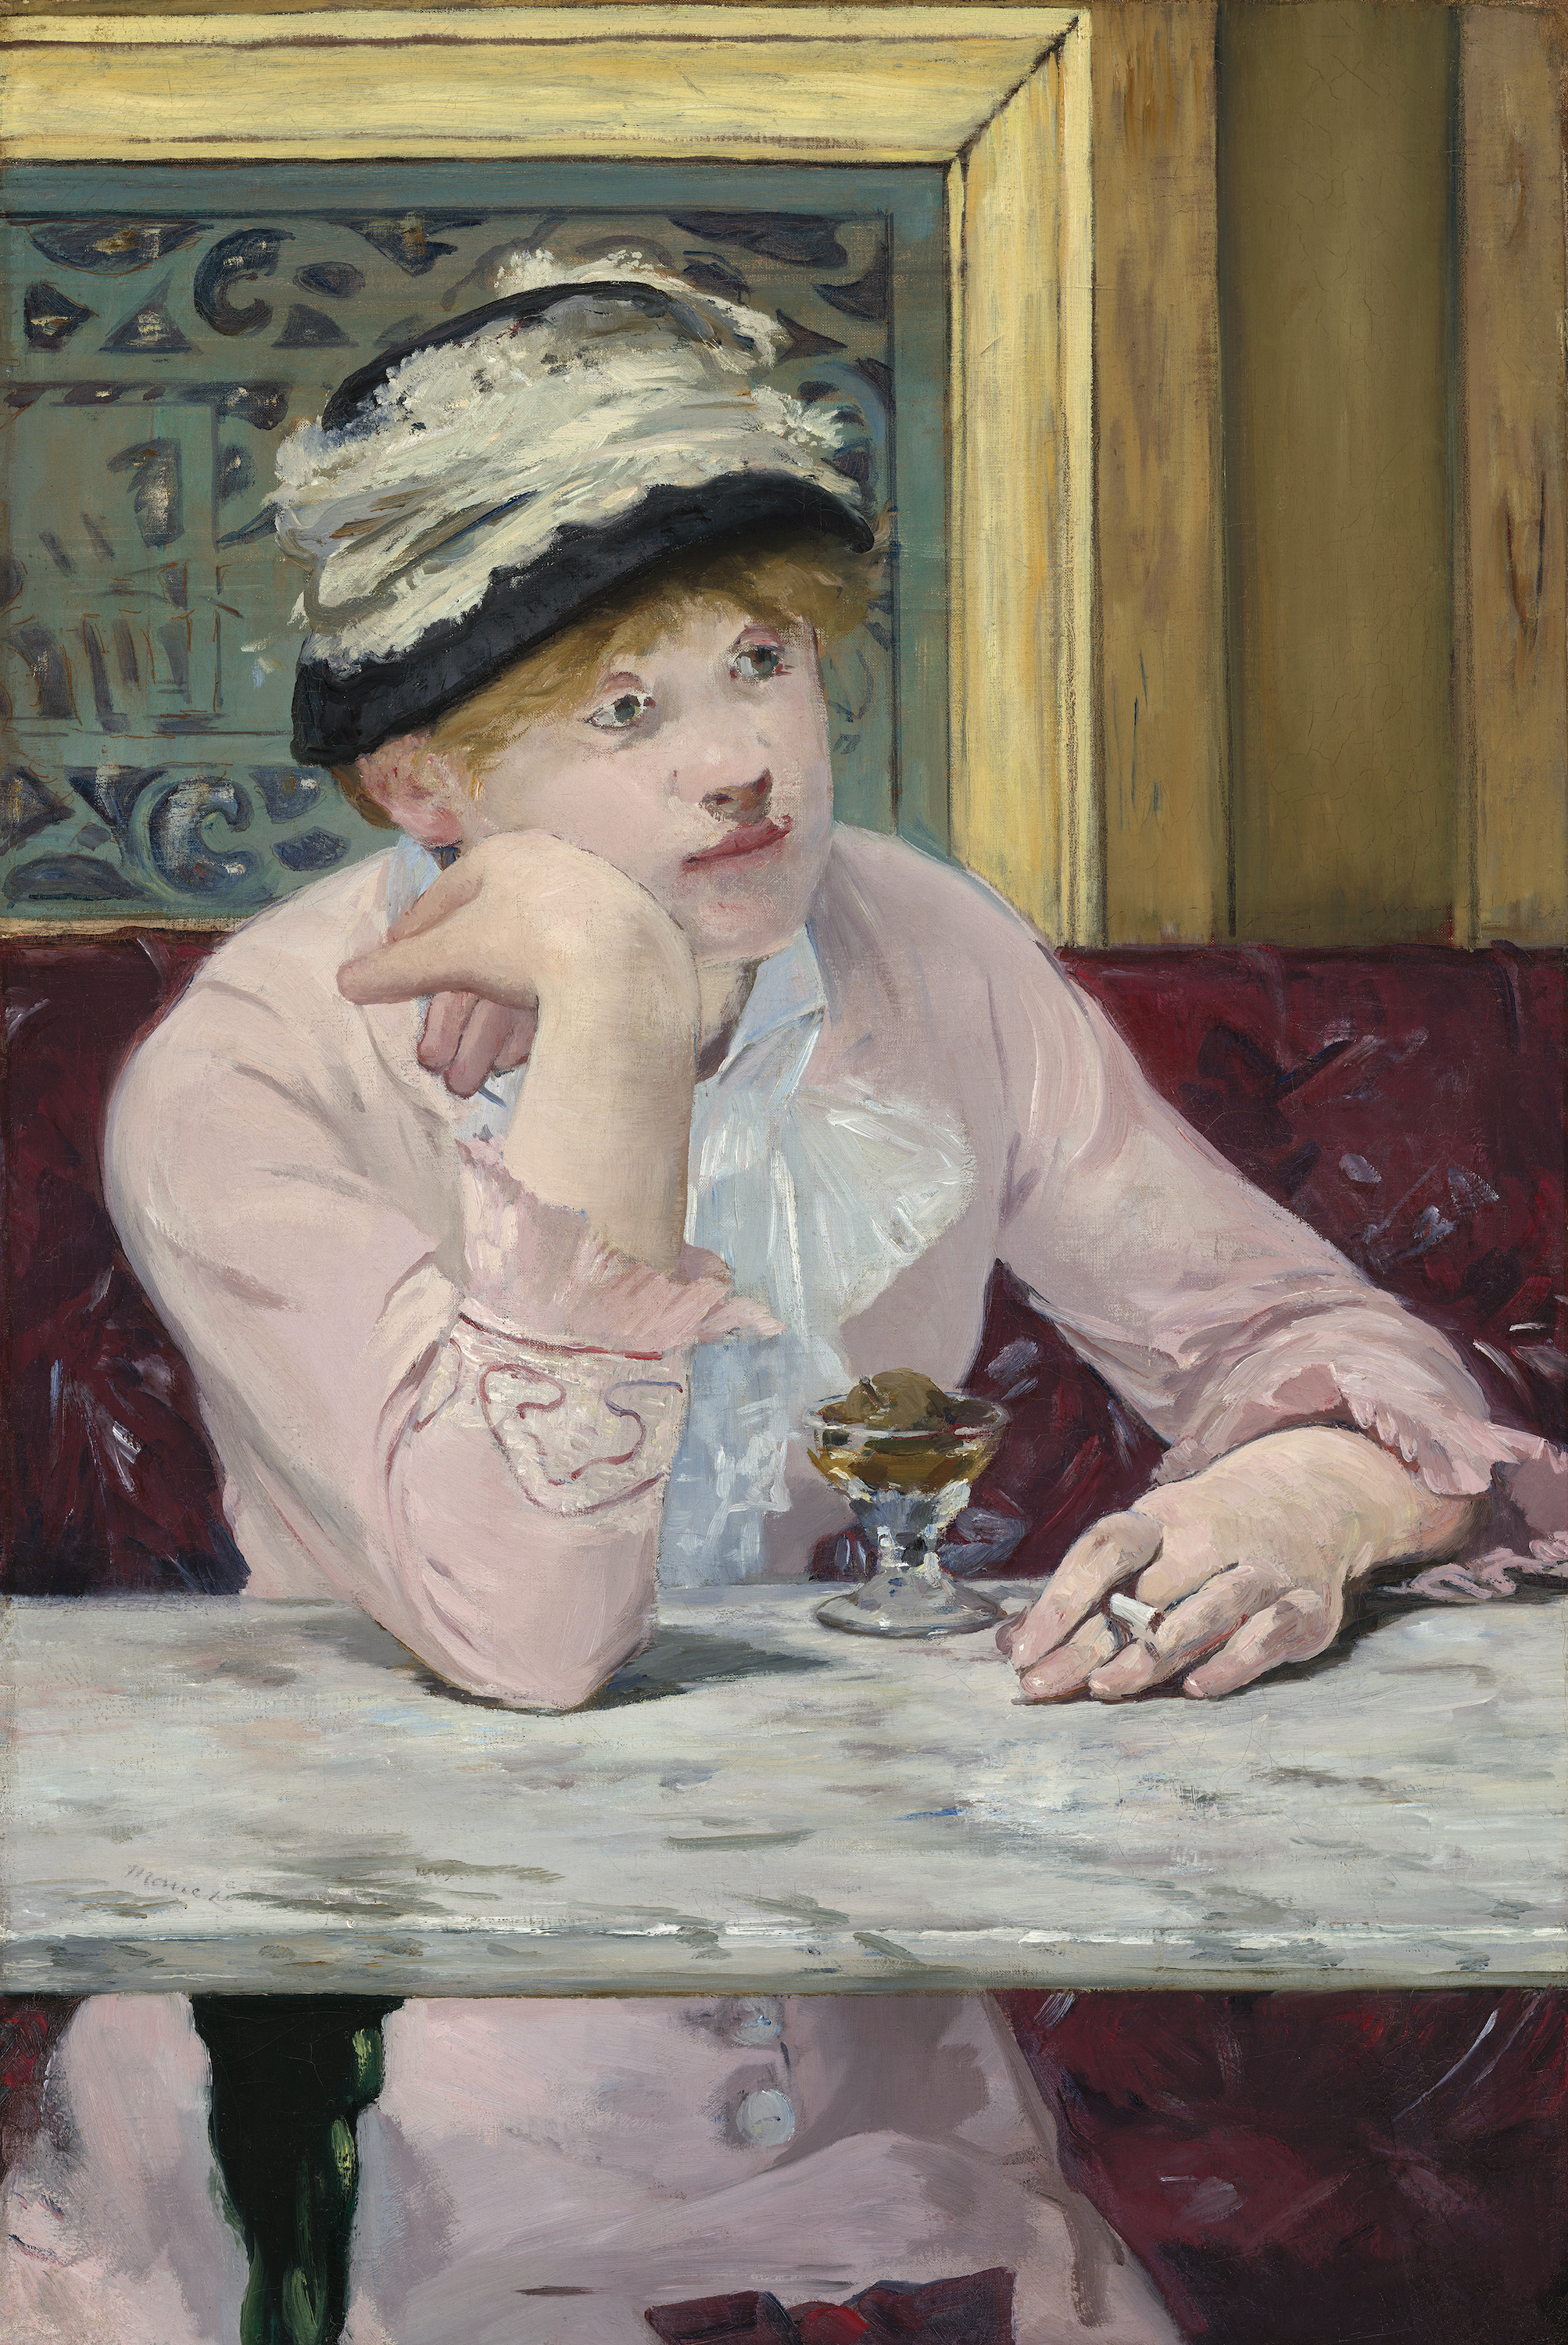 La prugna by Édouard Manet - ca. 1877 - 73,6 x 50,2 cm 